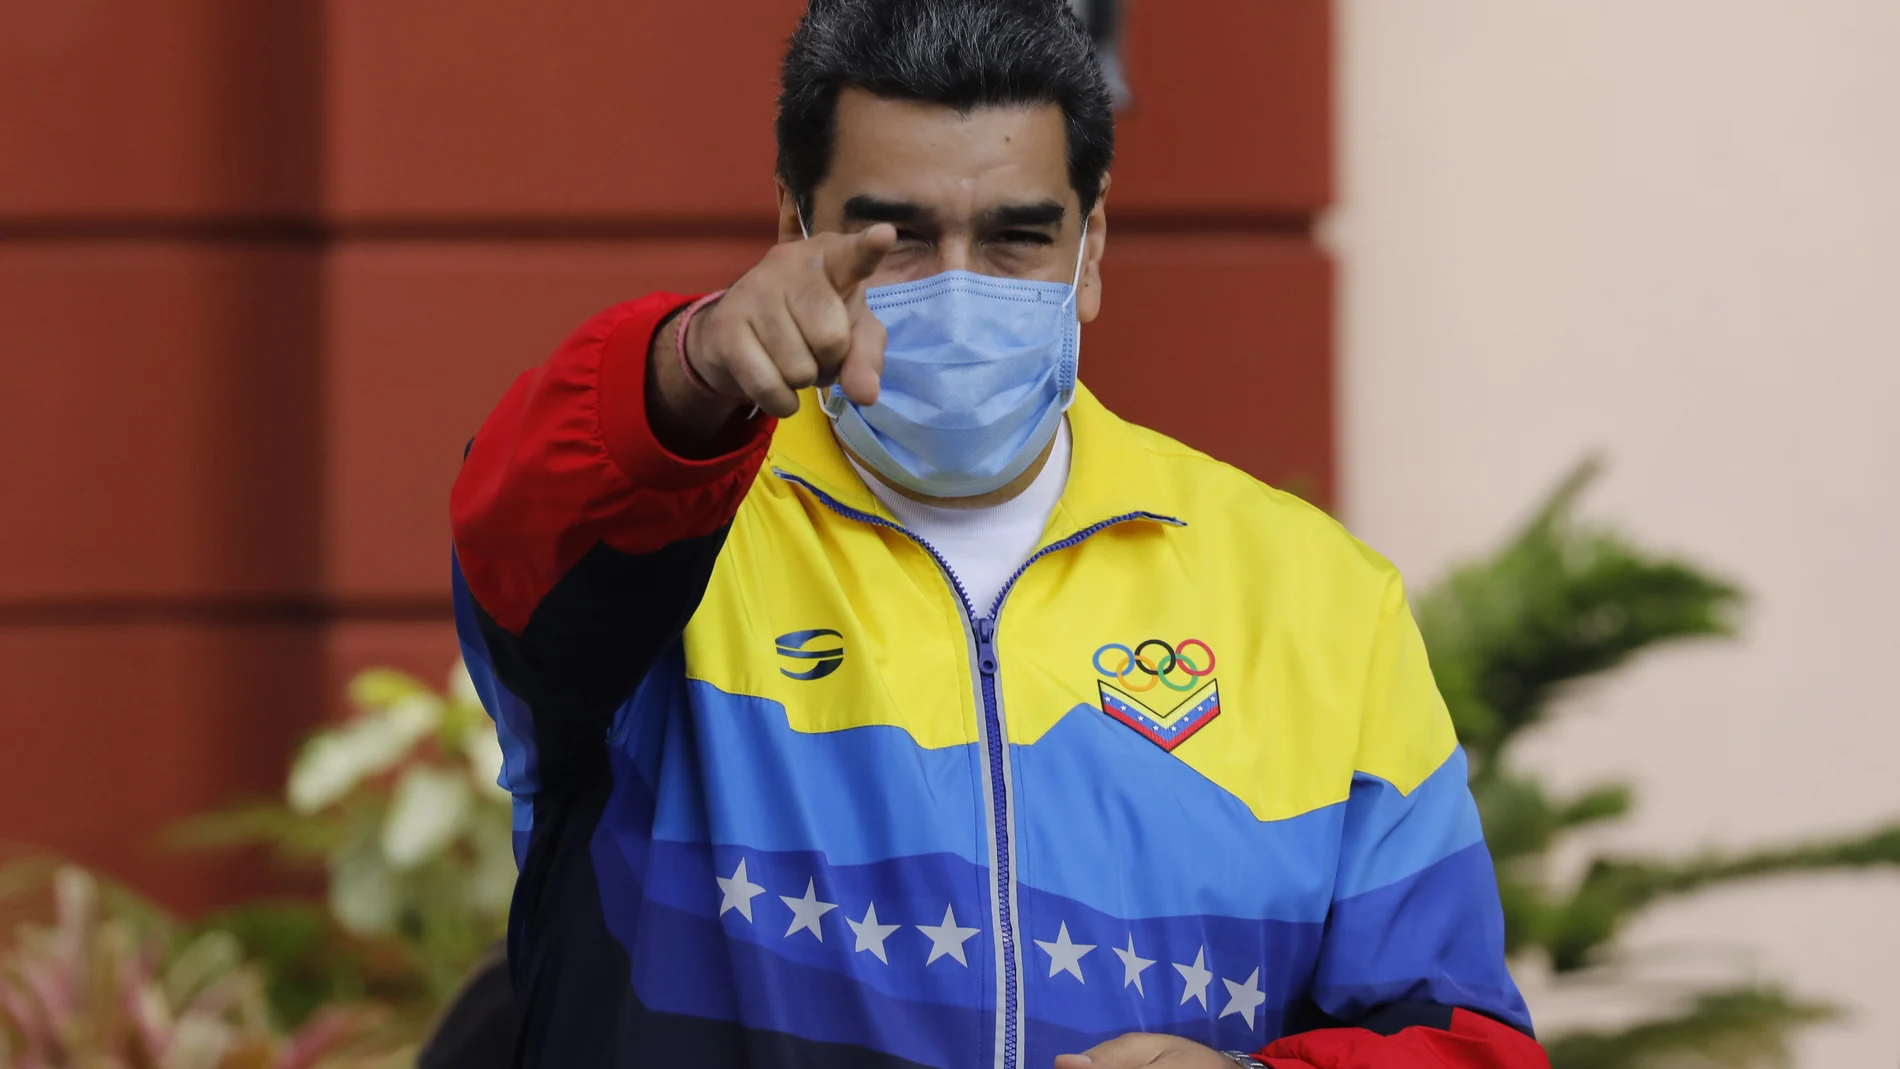 El presidente venezolano Nicolás Maduro durante un discurso en Caracas